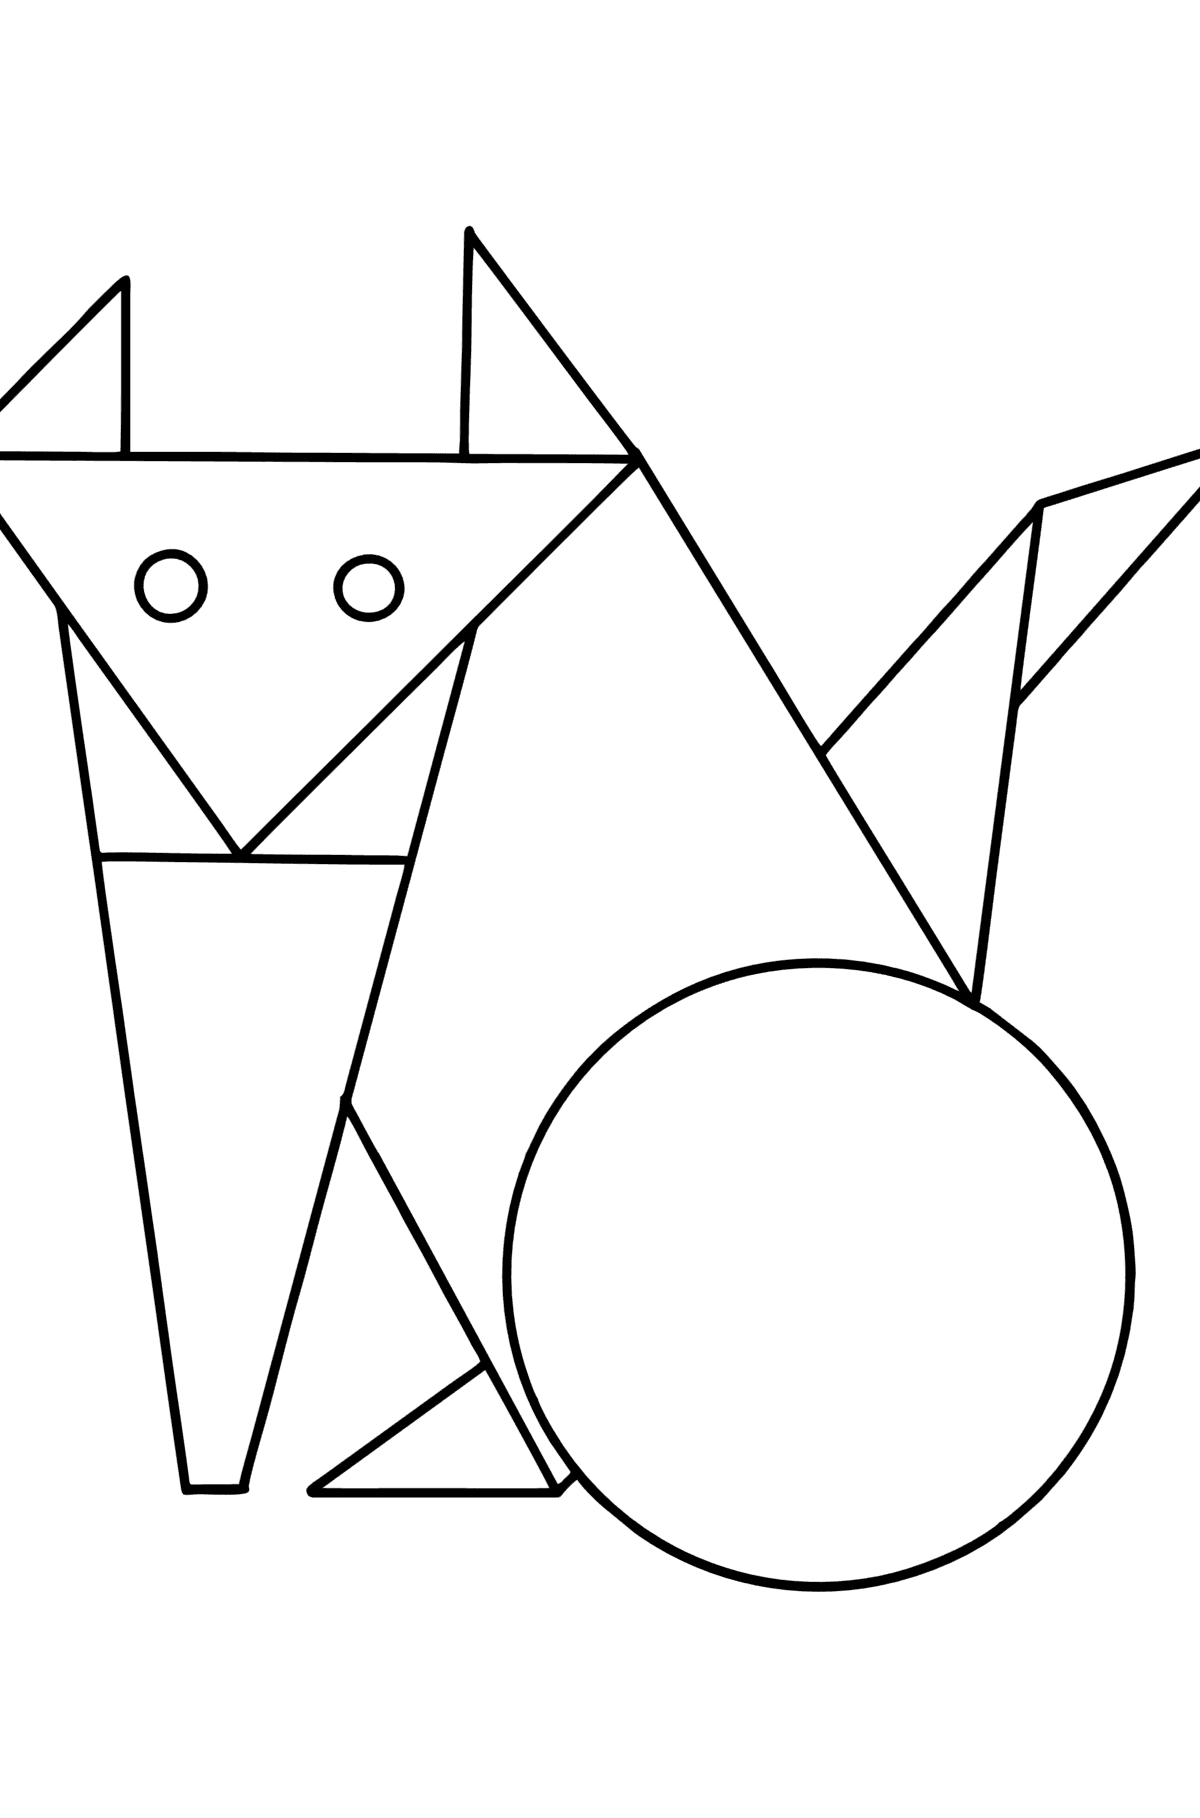 Boyama sayfası geometrik şekiller - yavru kedi - Boyamalar çocuklar için